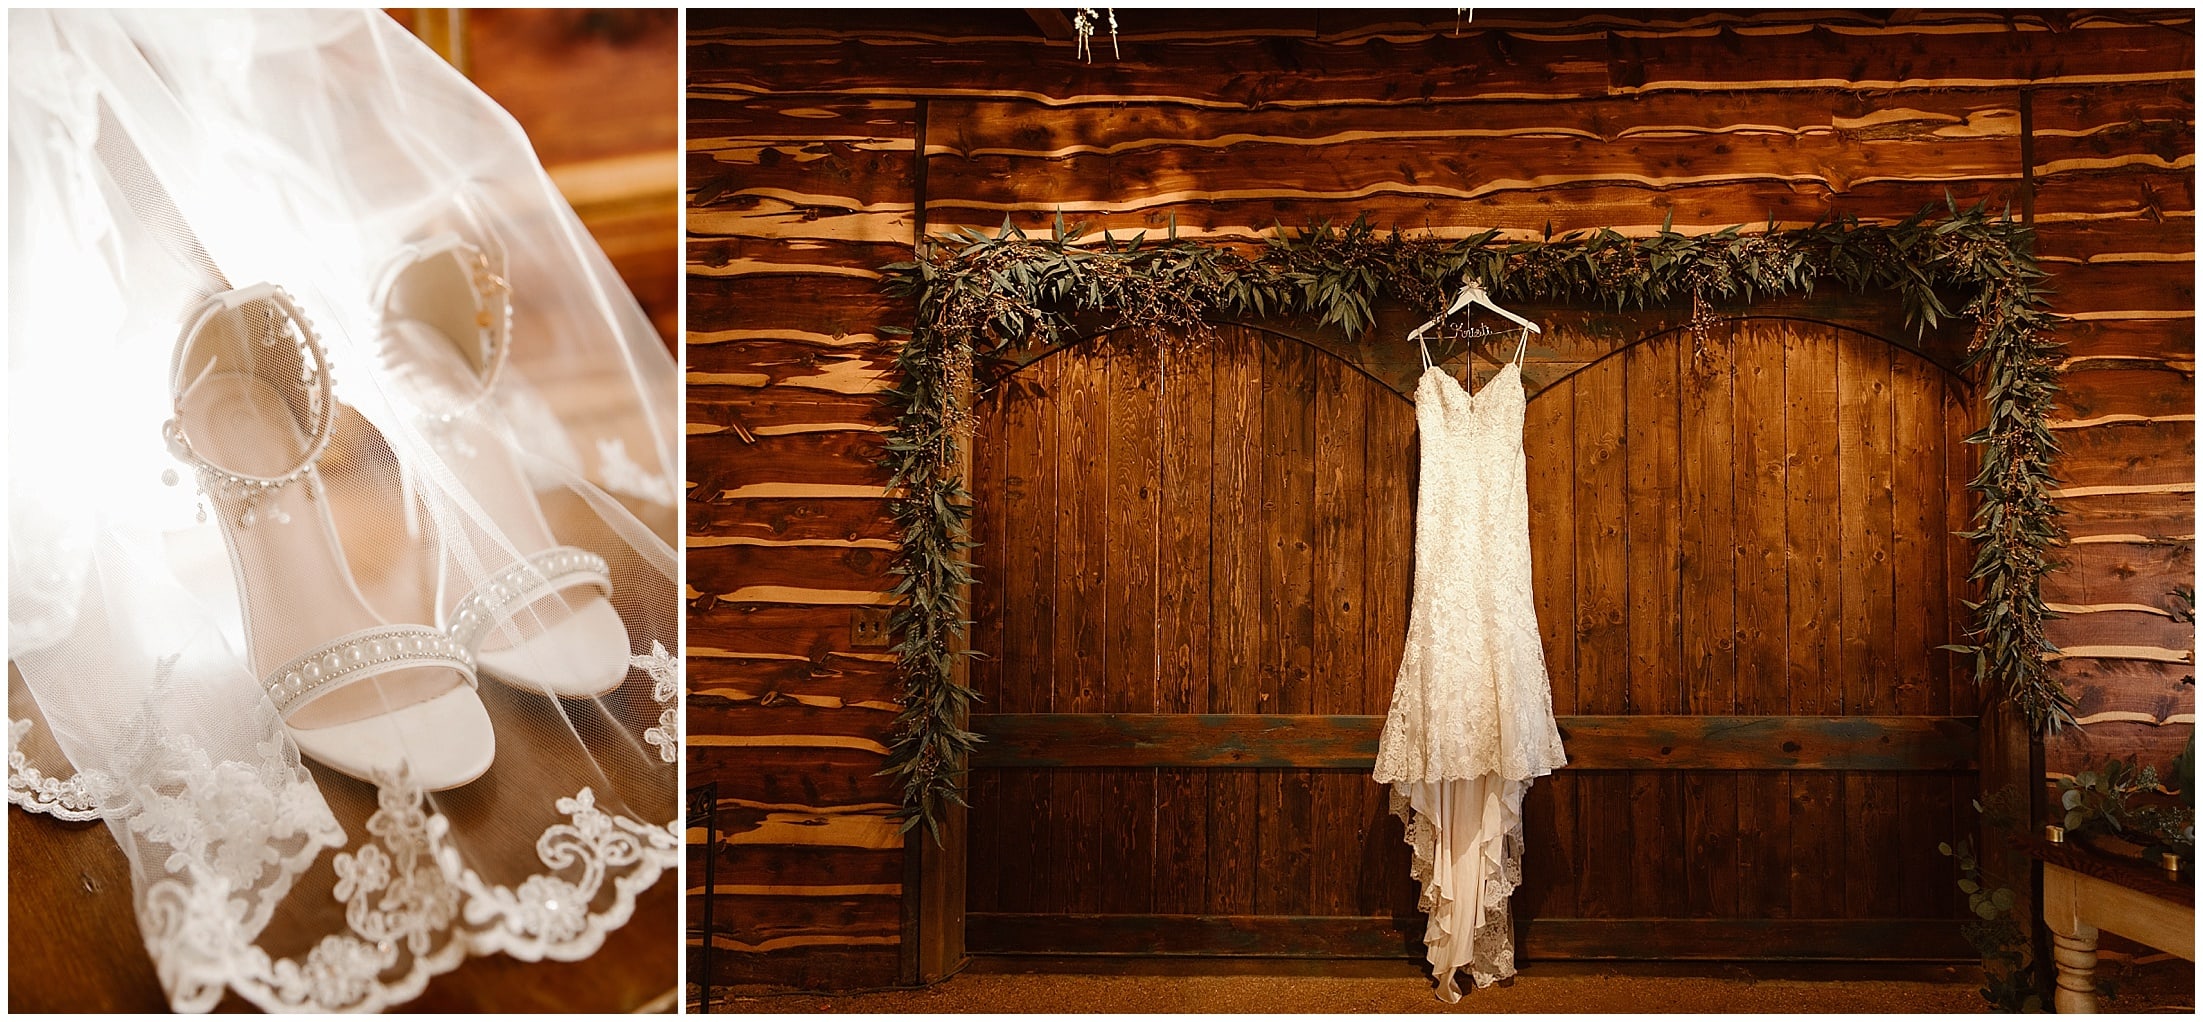 hanging wedding dress from cabin door